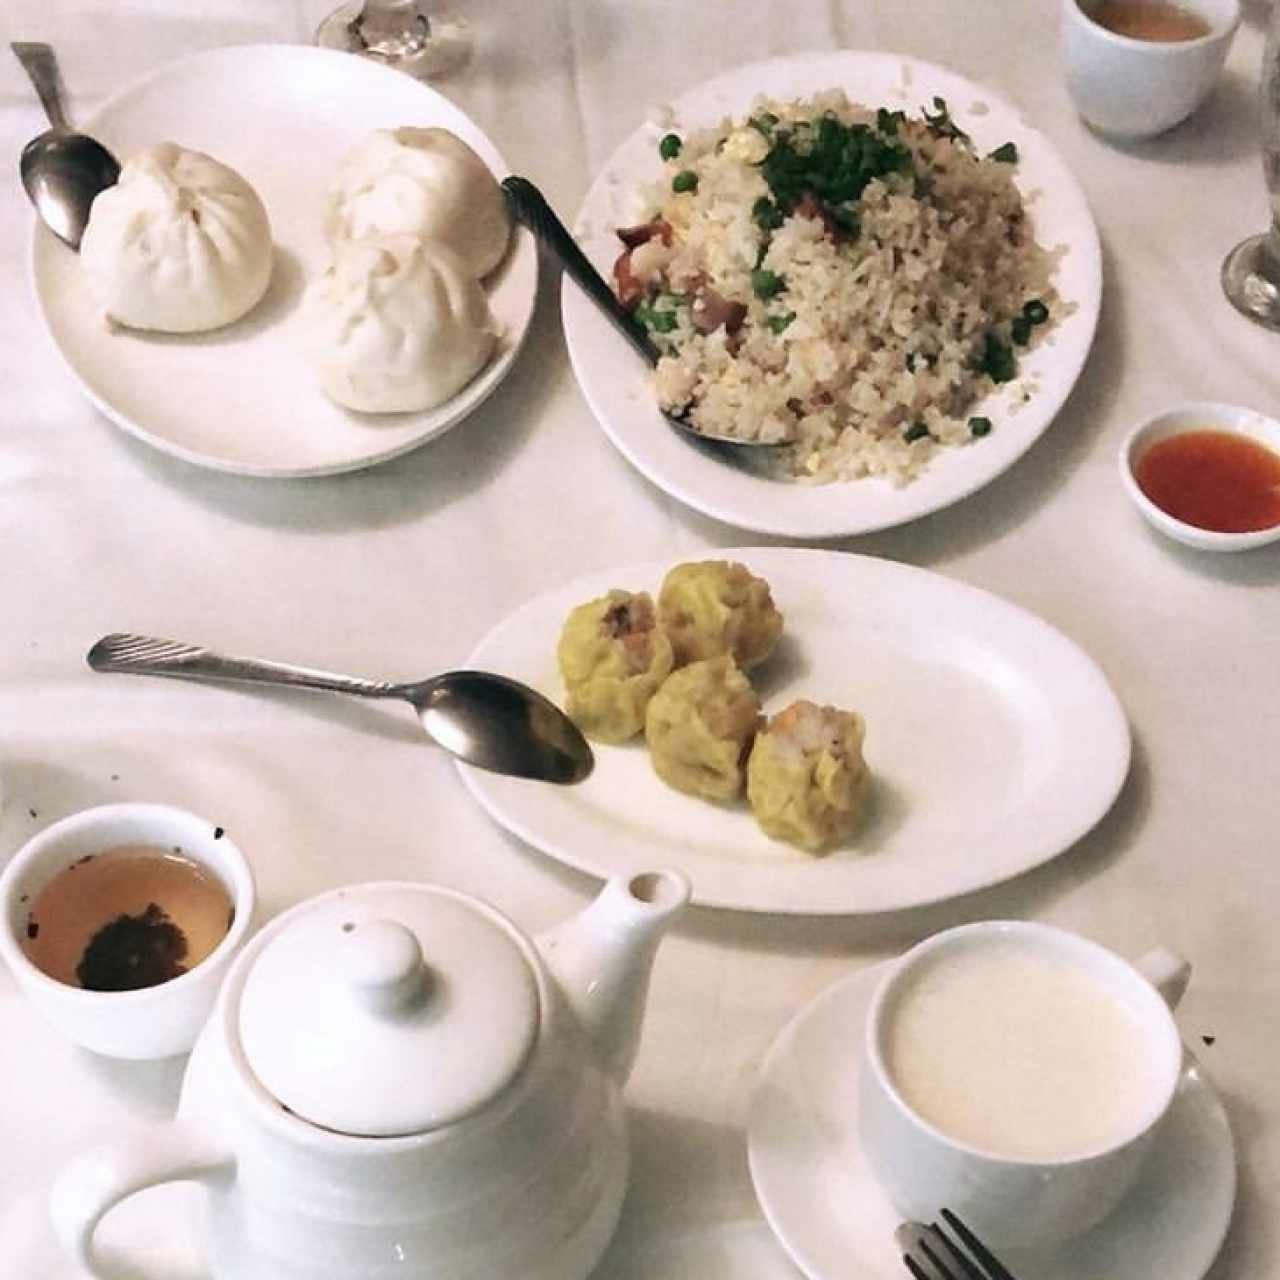 sui mai, ham pao y arroz estilo cantonés